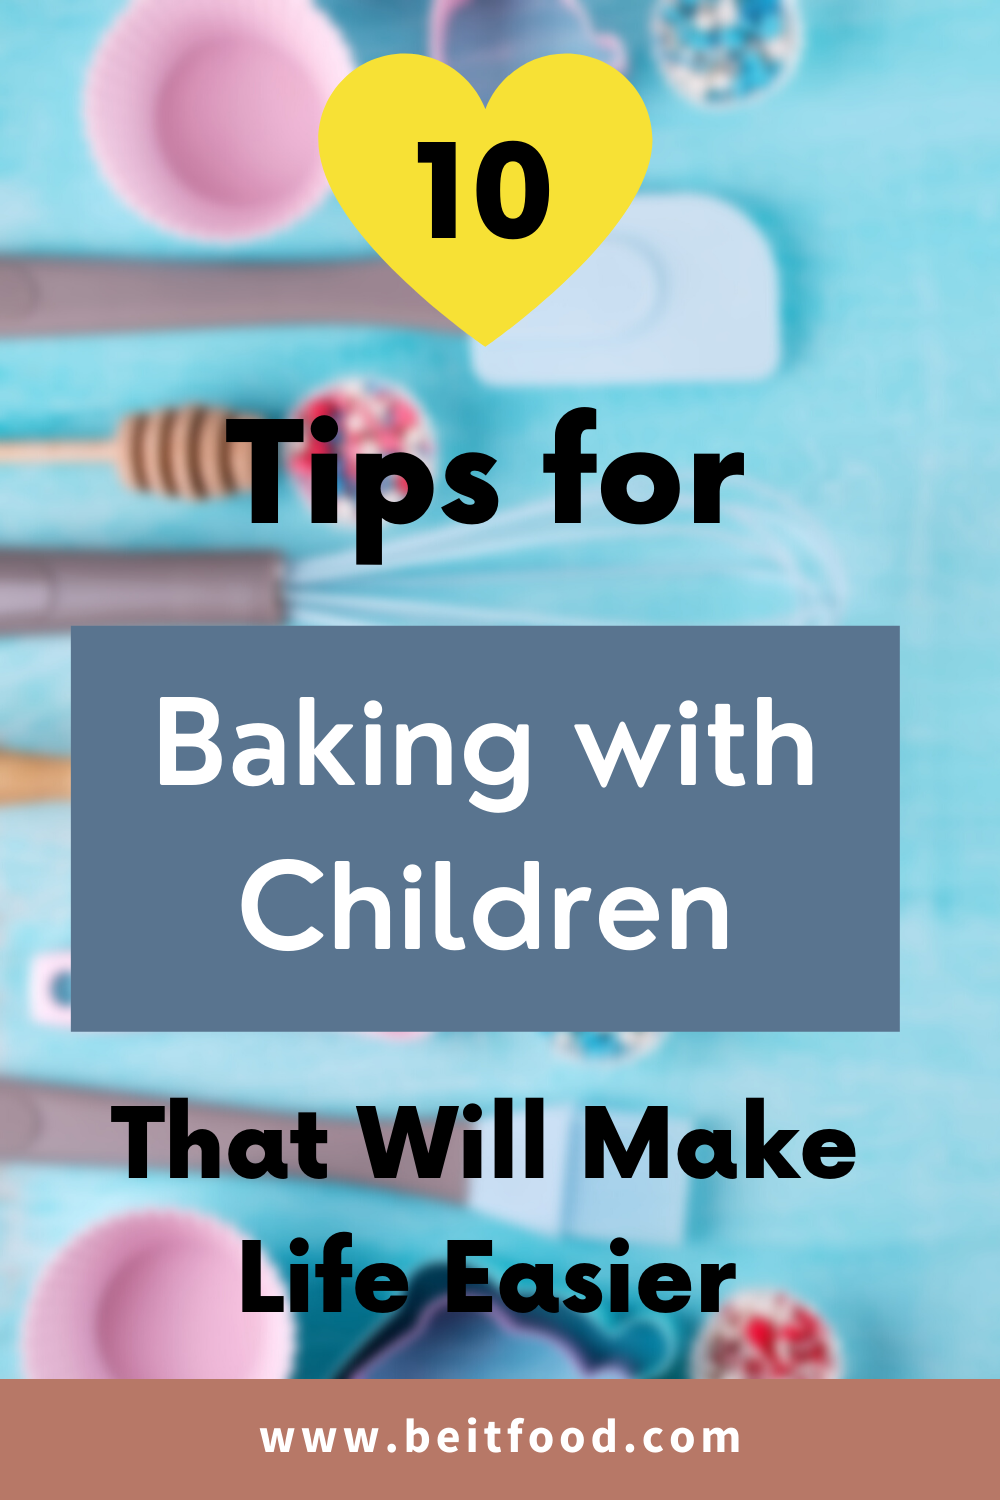 Baking with Children